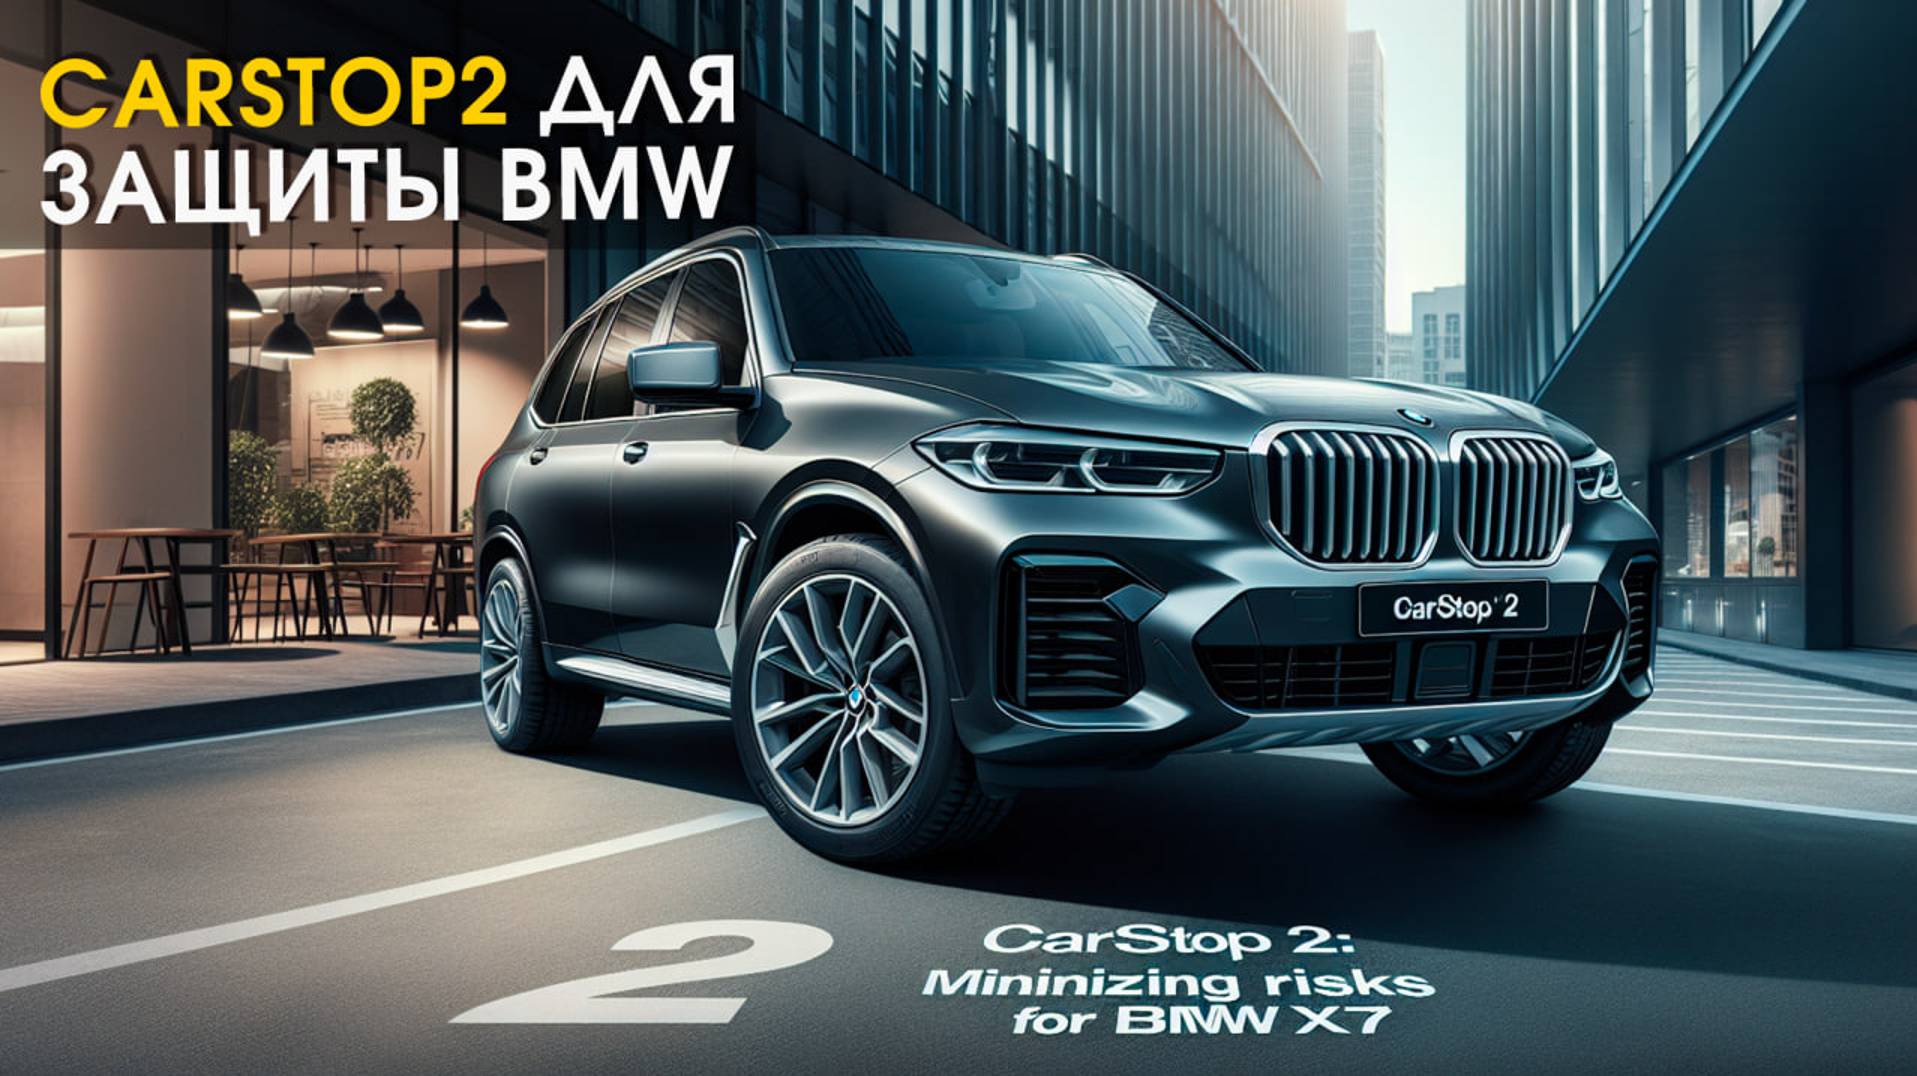 BMW X7: установили иммобилайзер CarStop2 | Защита от угона в СПб